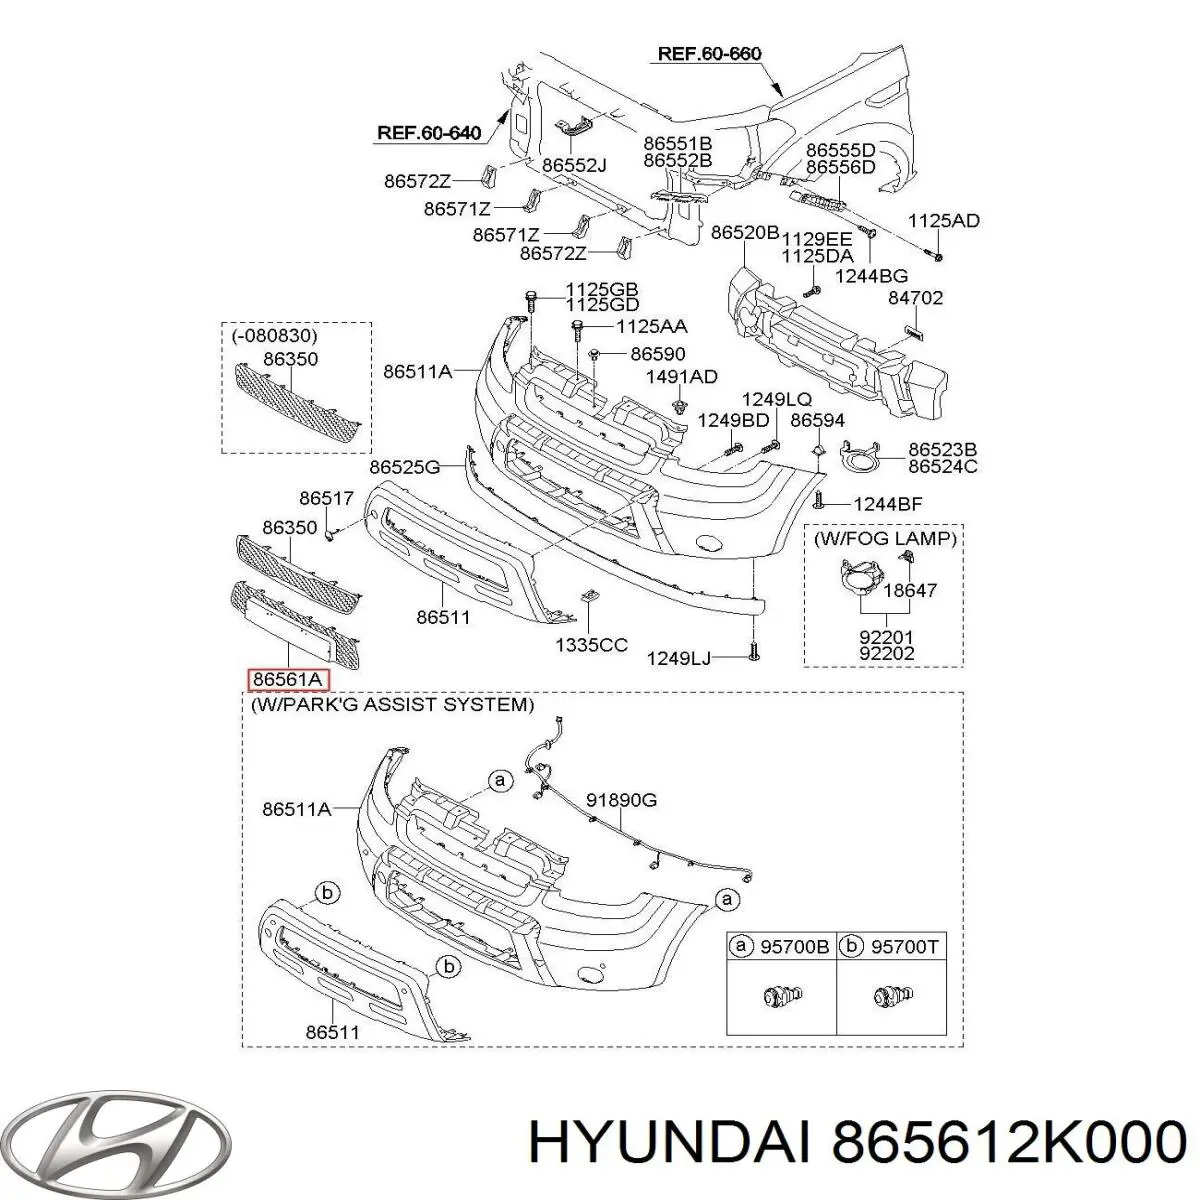 865612k000 Hyundai/Kia rejilla de ventilación, parachoques delantero